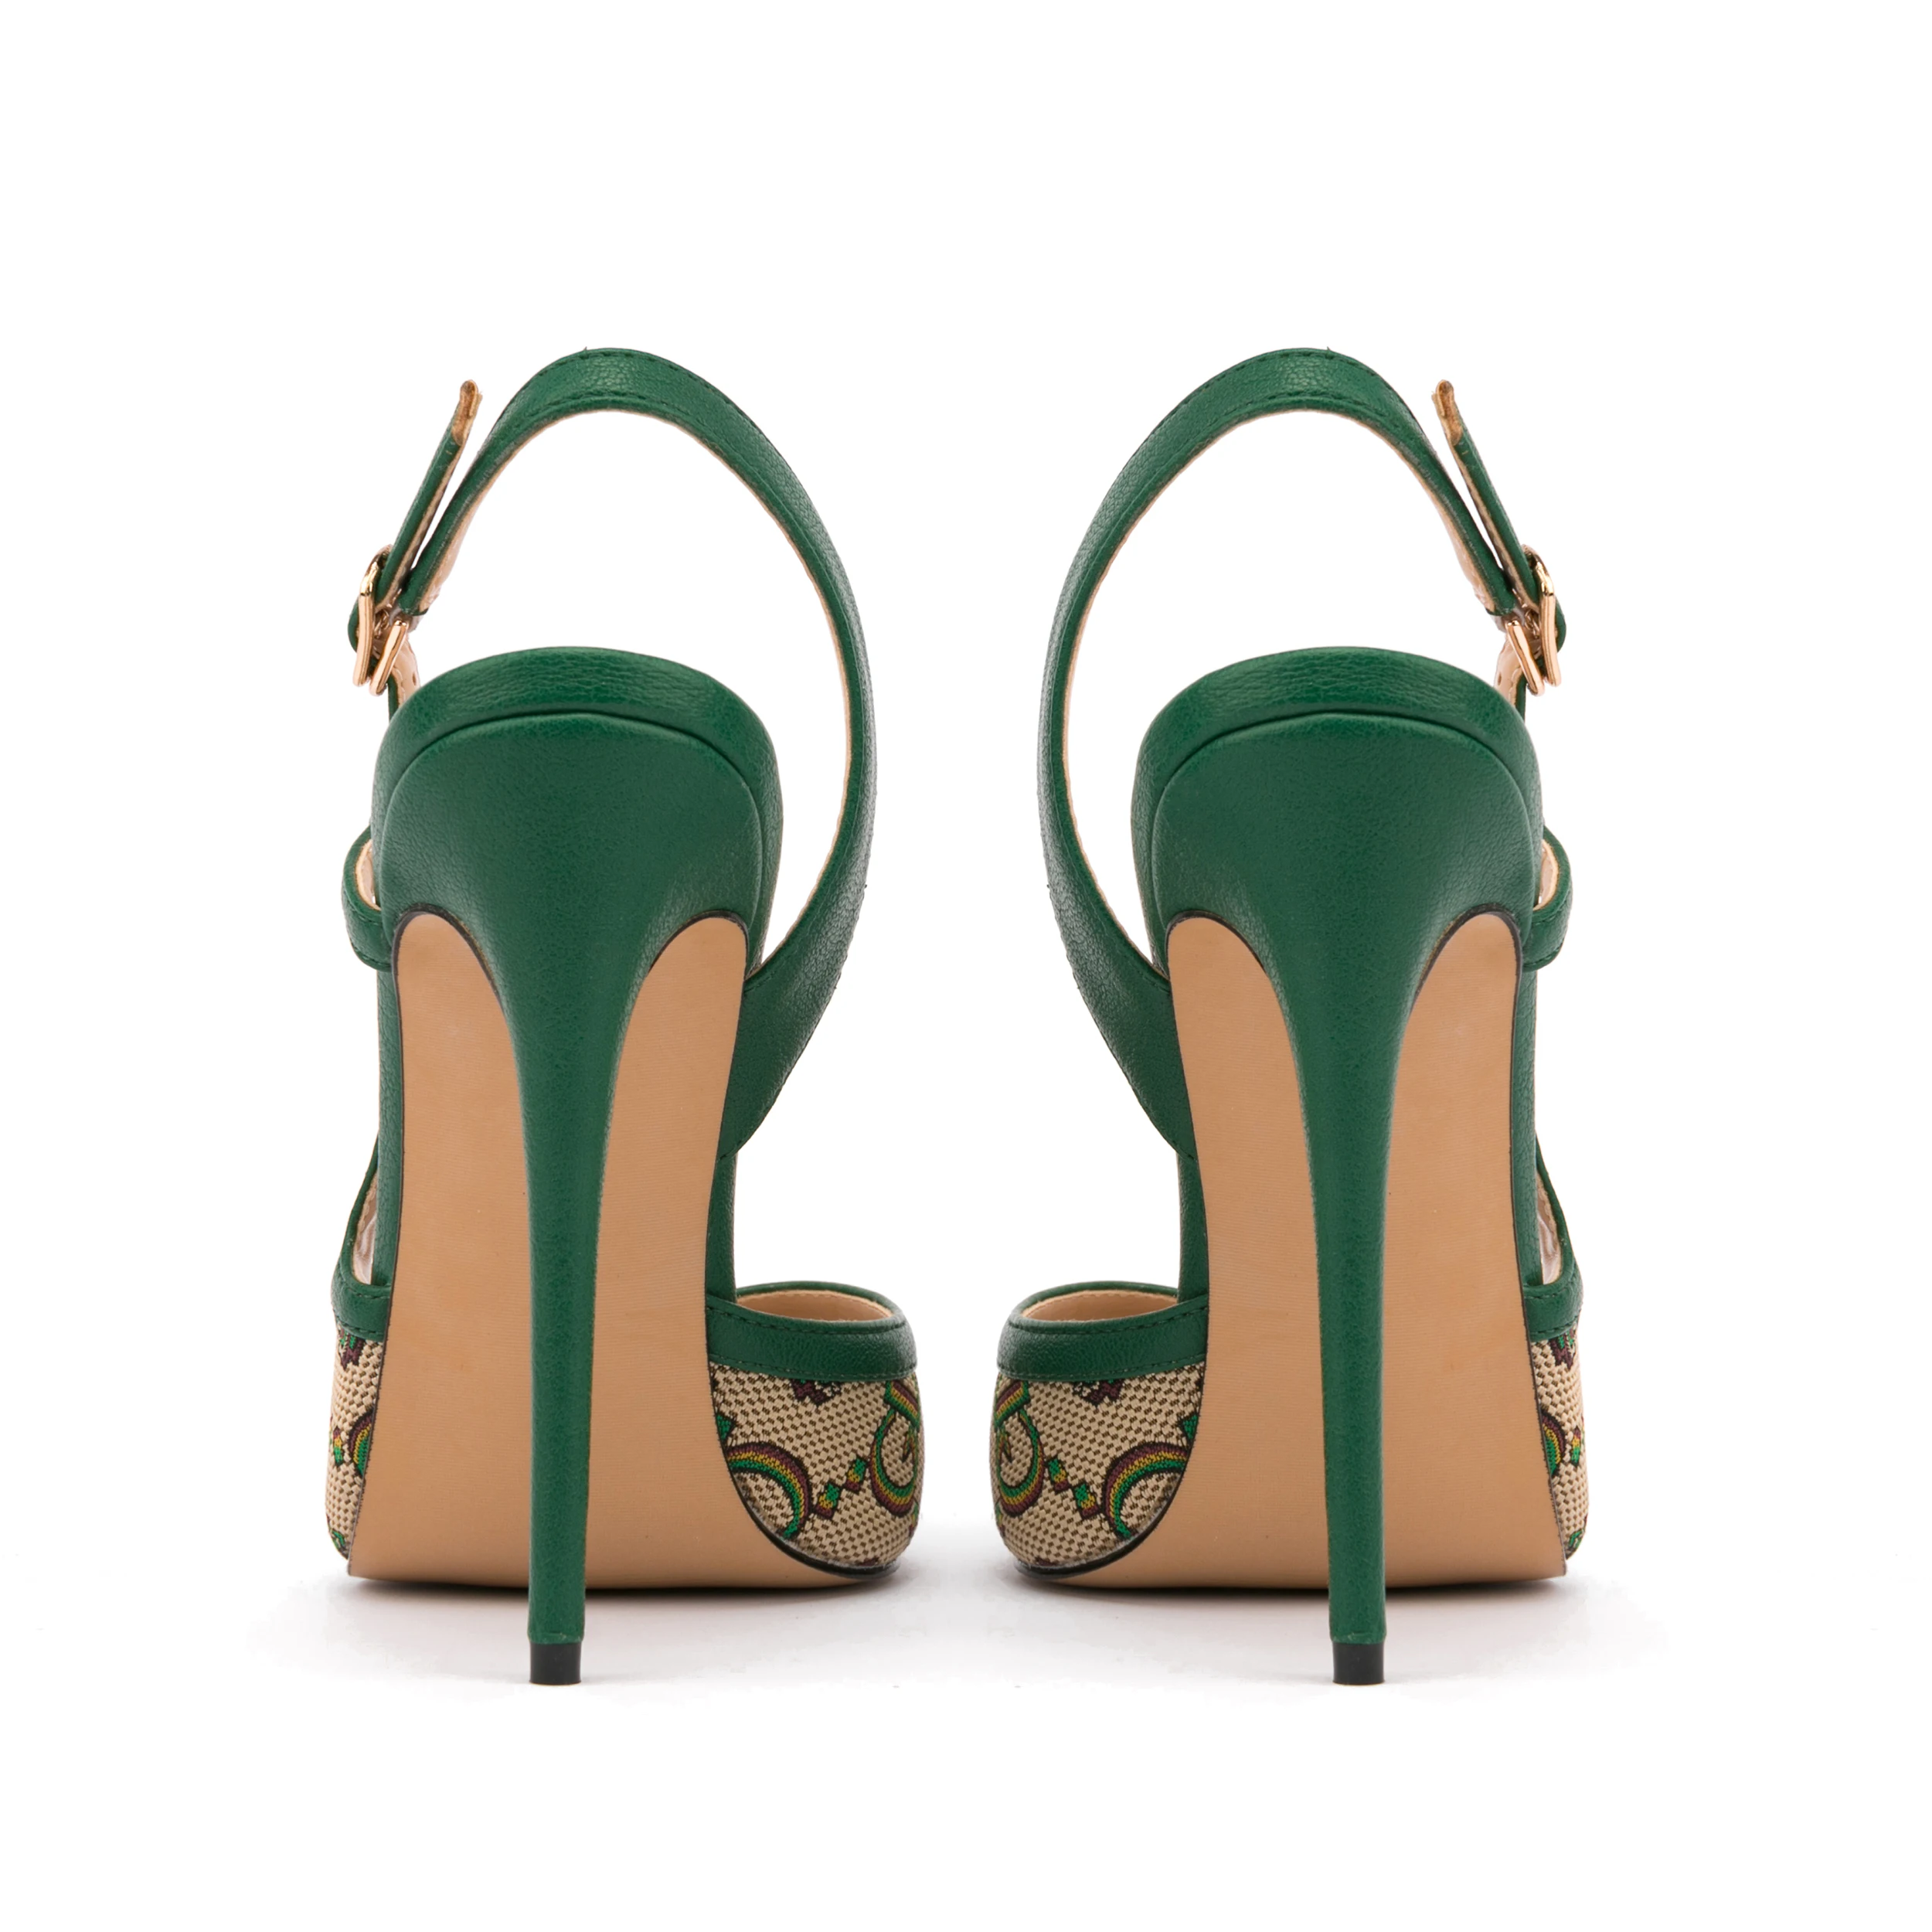 Designer Spring Sling Back Heel Shoes Women's Shoes Heel Pointed Toe ...